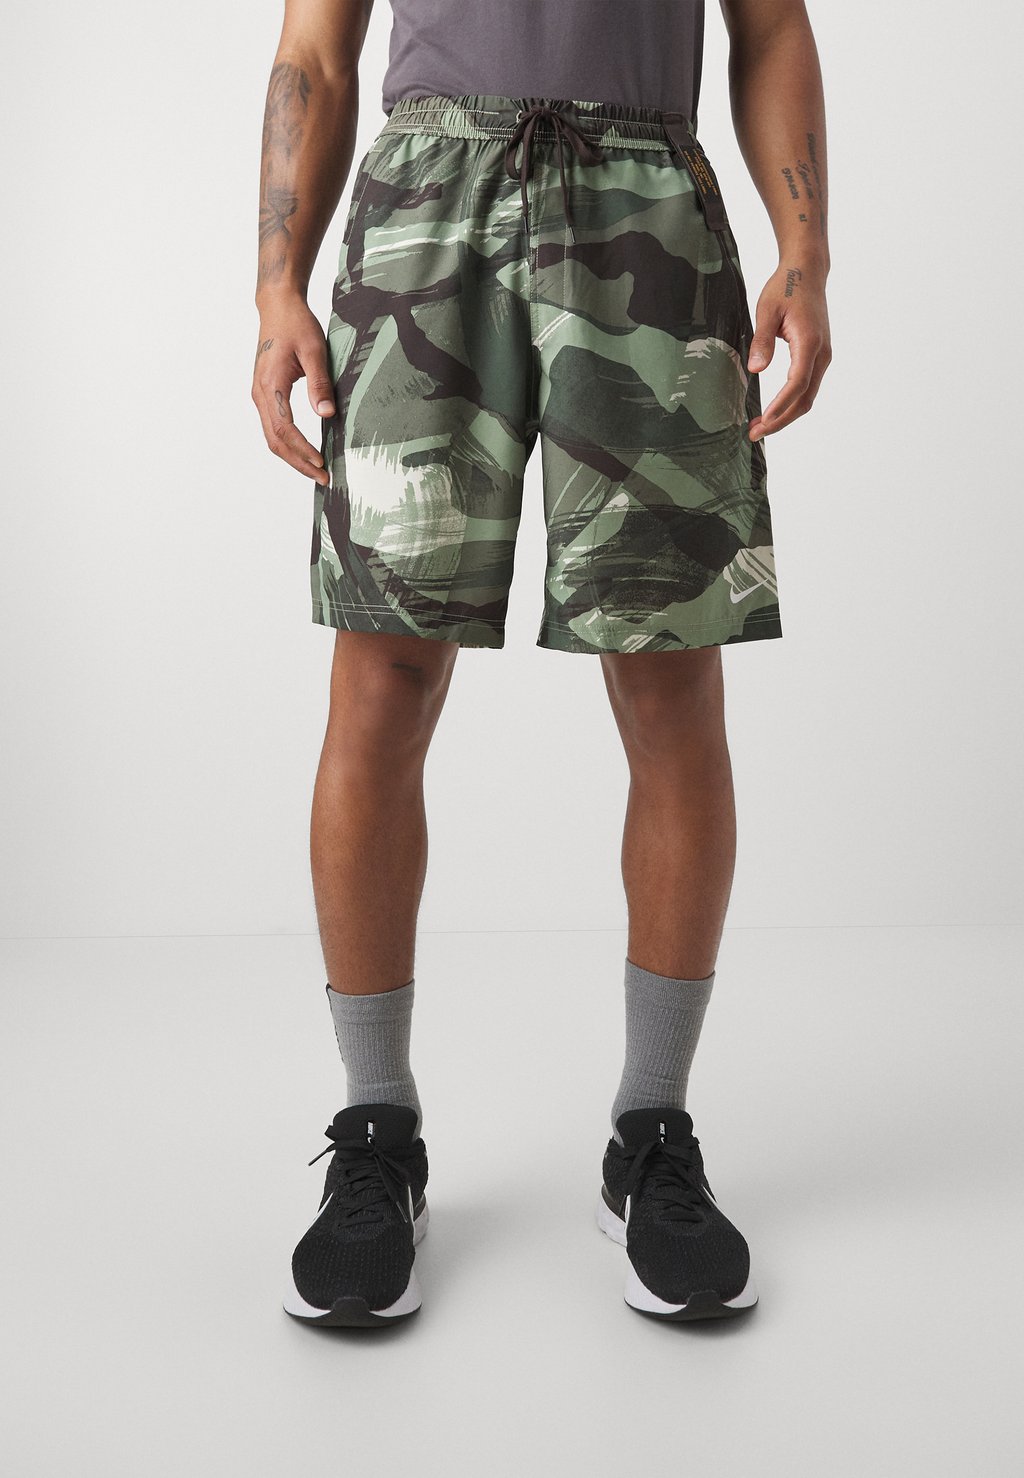 Спортивные шорты Form Short Camo Nike, цвет oil green/velvet brown/white